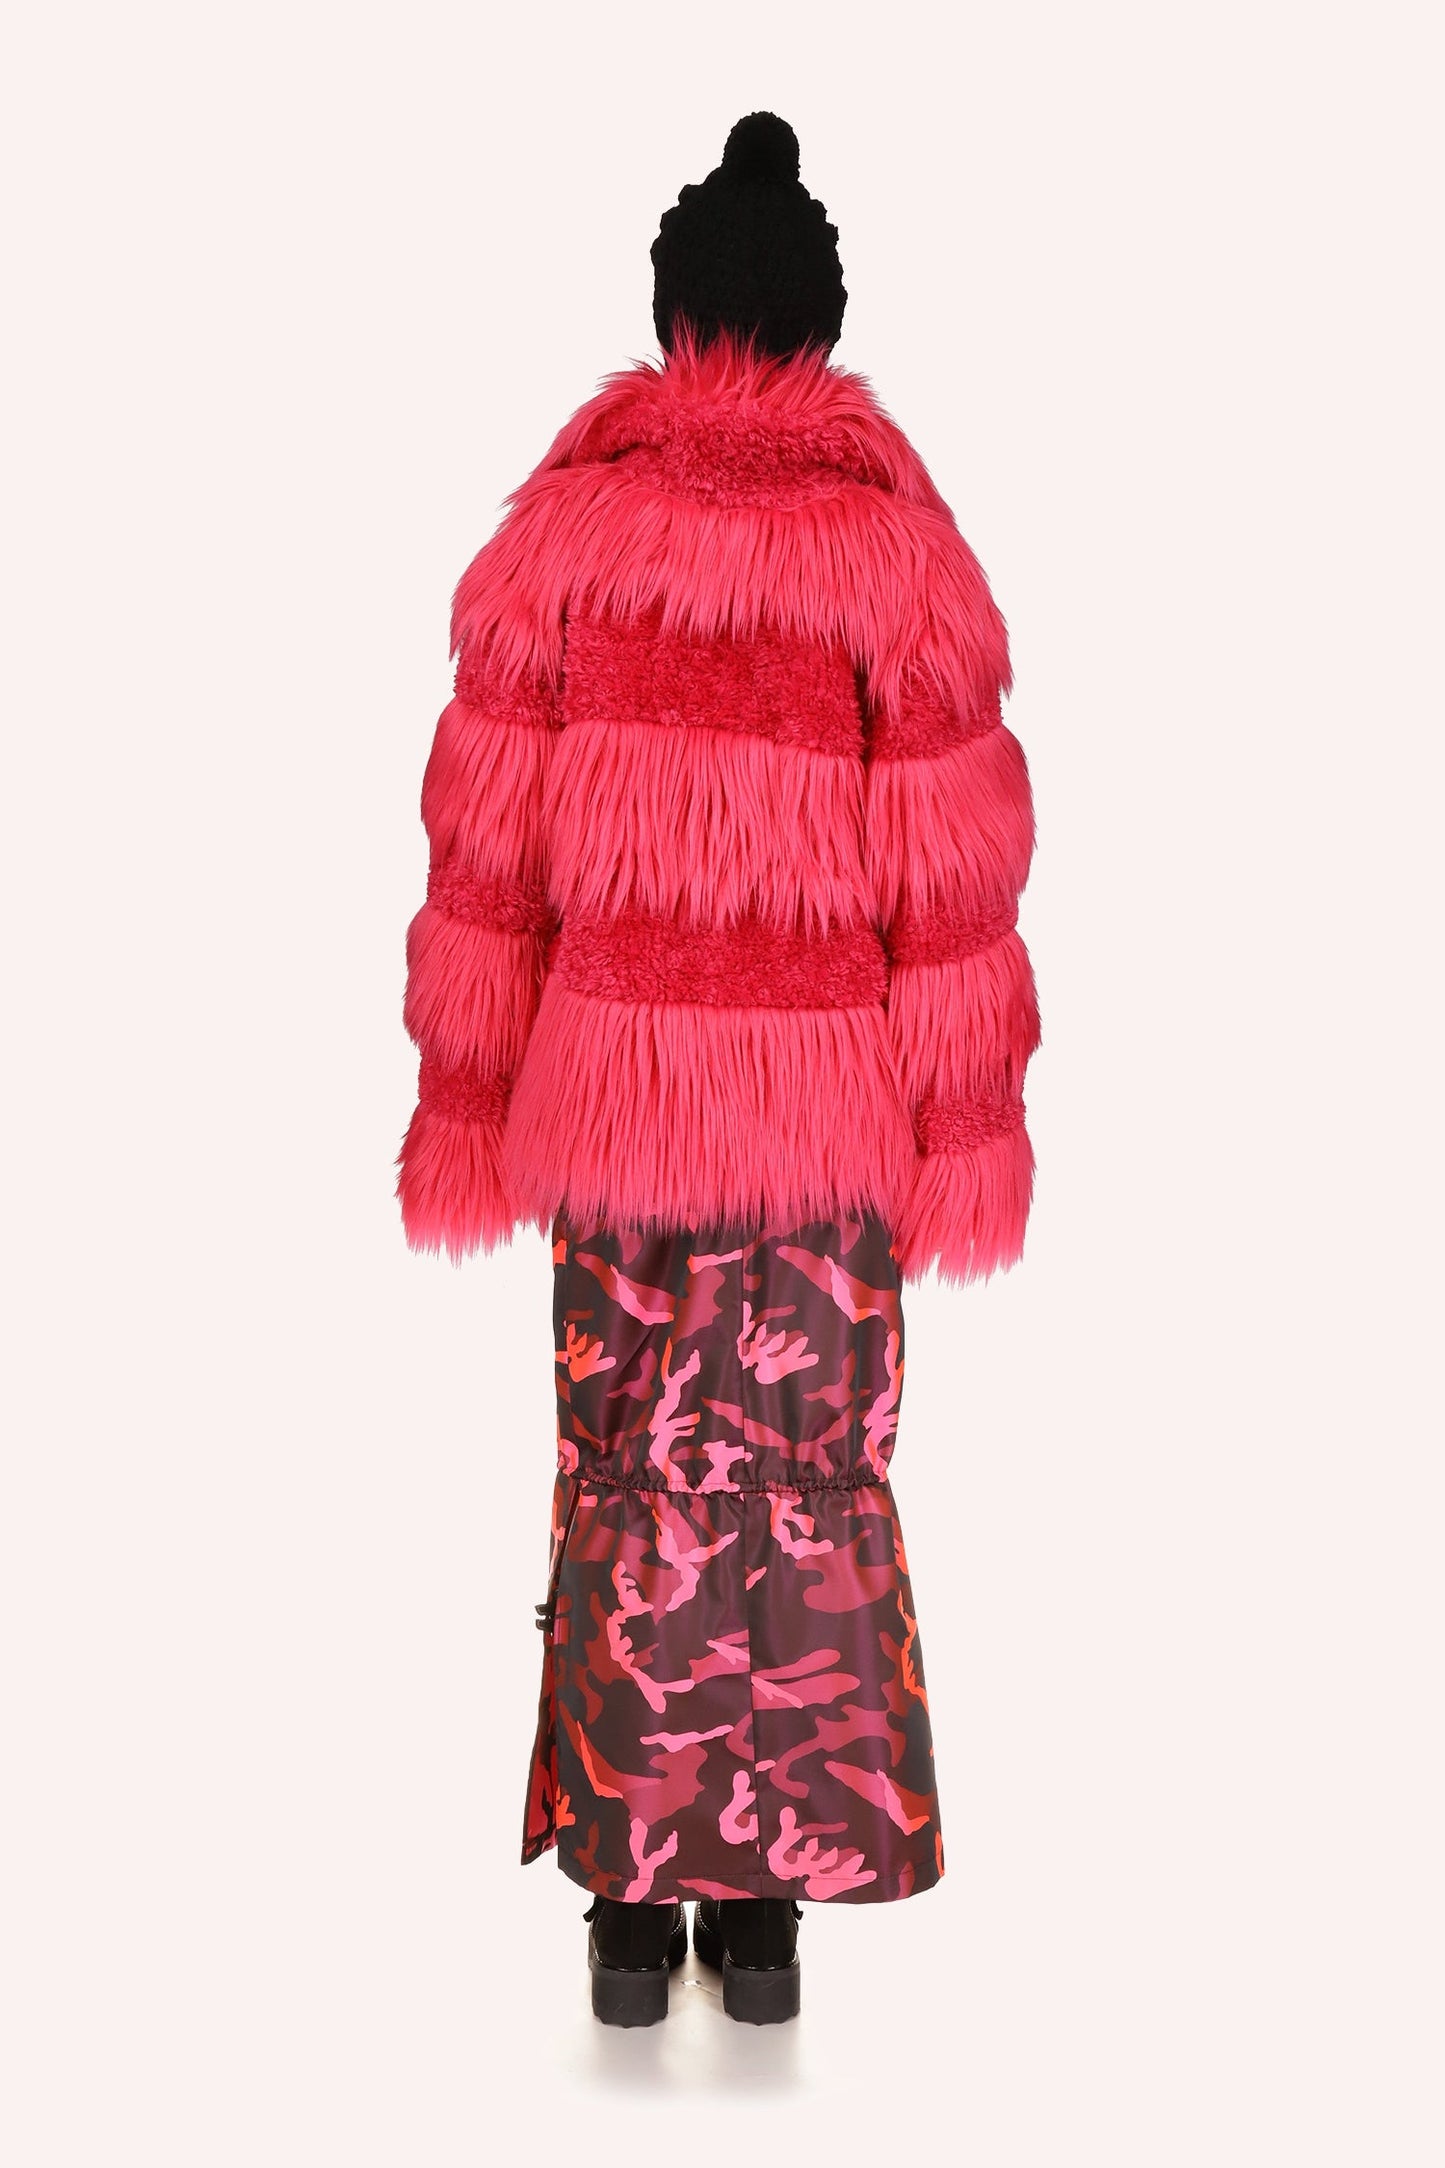  Anna Sui 粉红色毛绒泰迪熊拉链外套看起来非常舒适